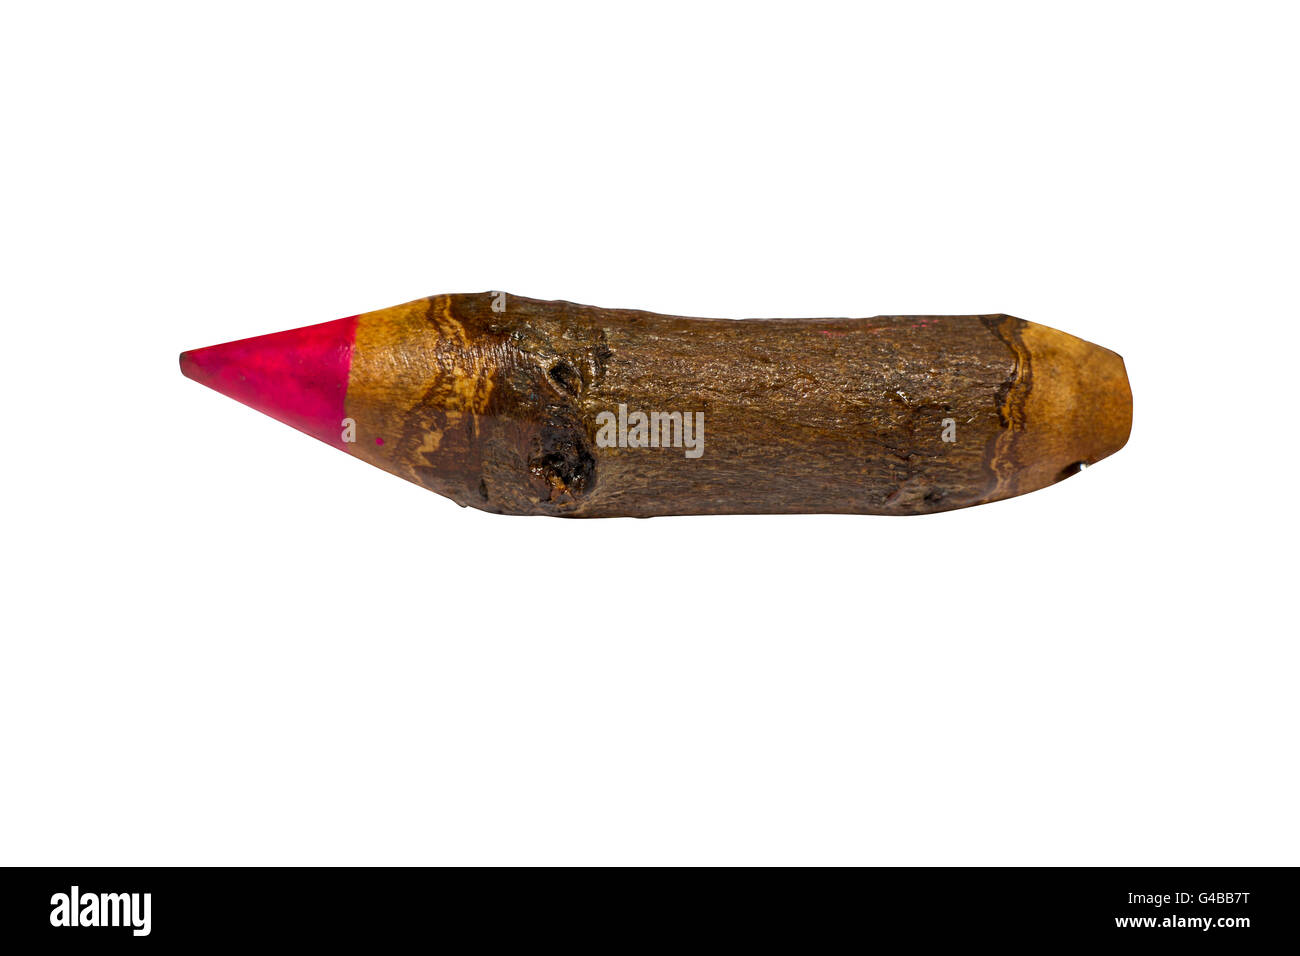 Crayon de couleur rose de la direction générale sur un fond blanc Banque D'Images